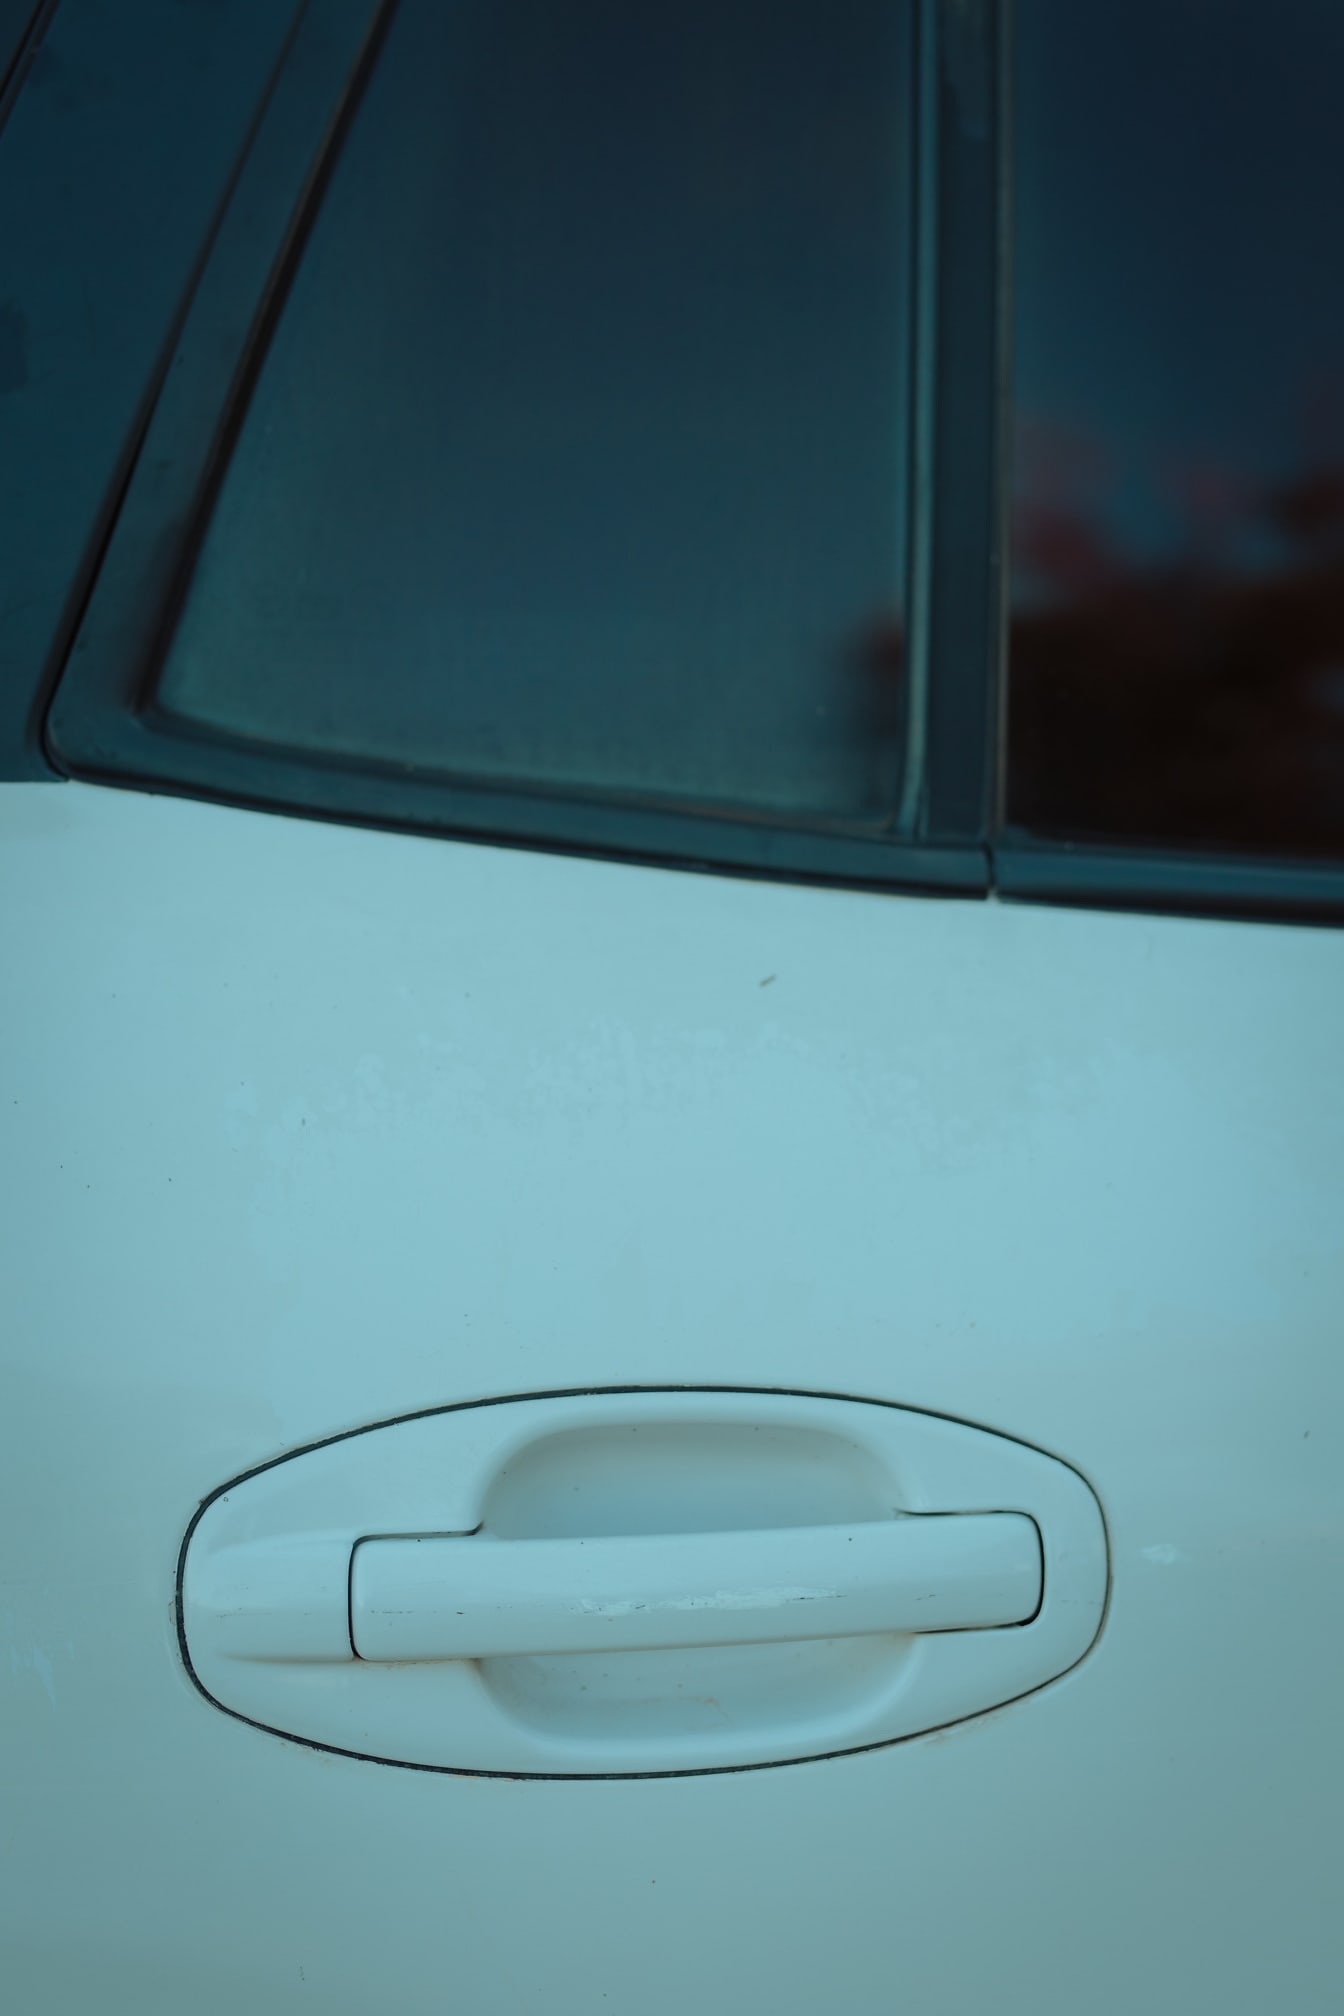 Detaliu de prim-plan al mânerului ușii de pe mașina metalică albă